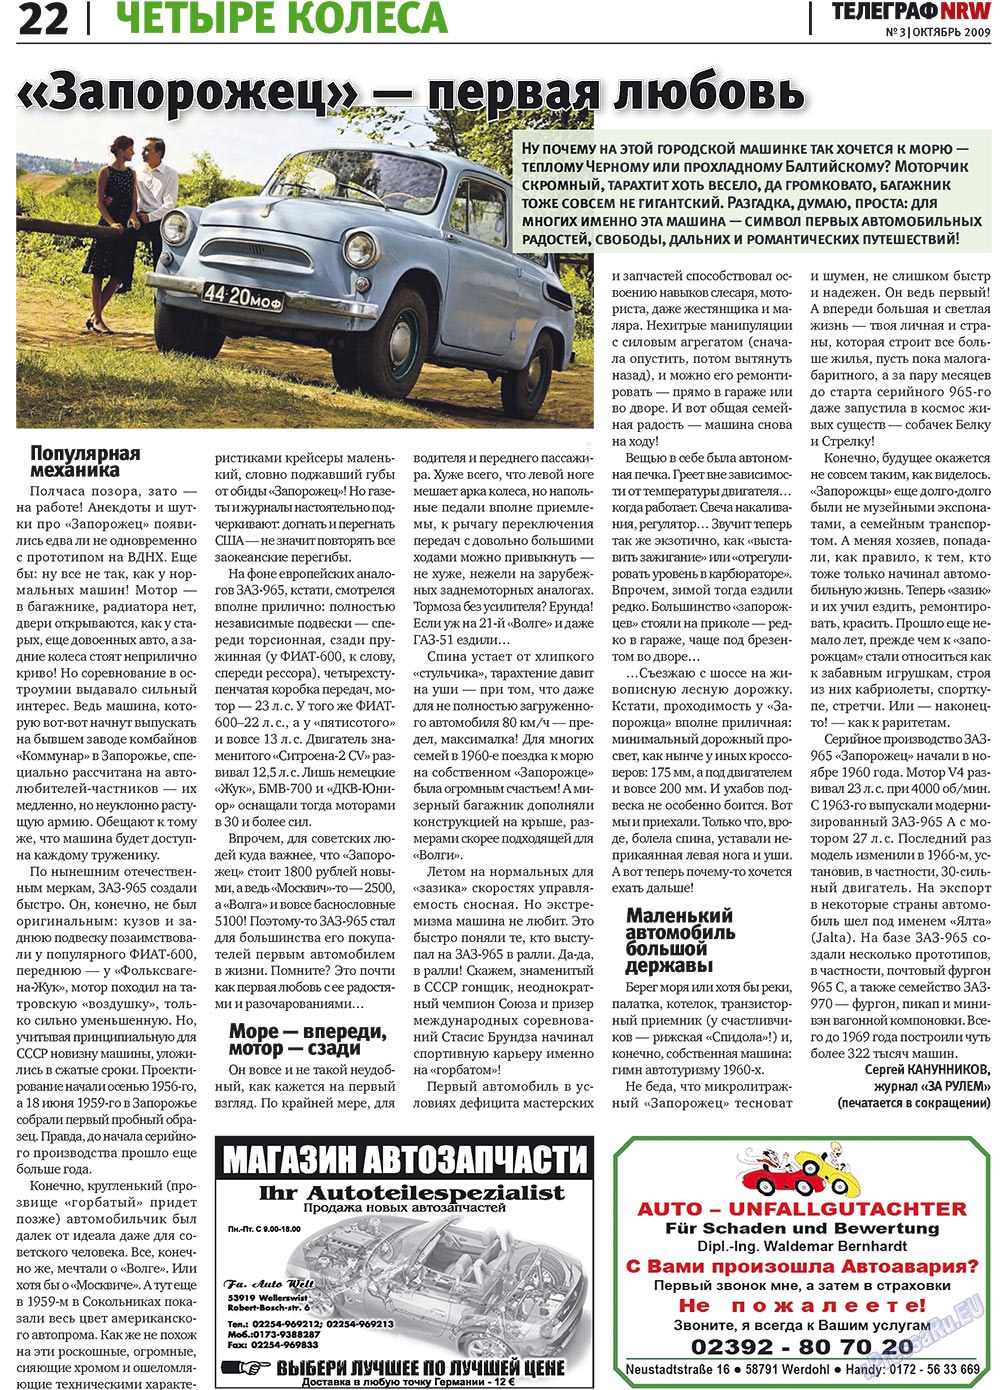 Телеграф NRW (газета). 2009 год, номер 3, стр. 22